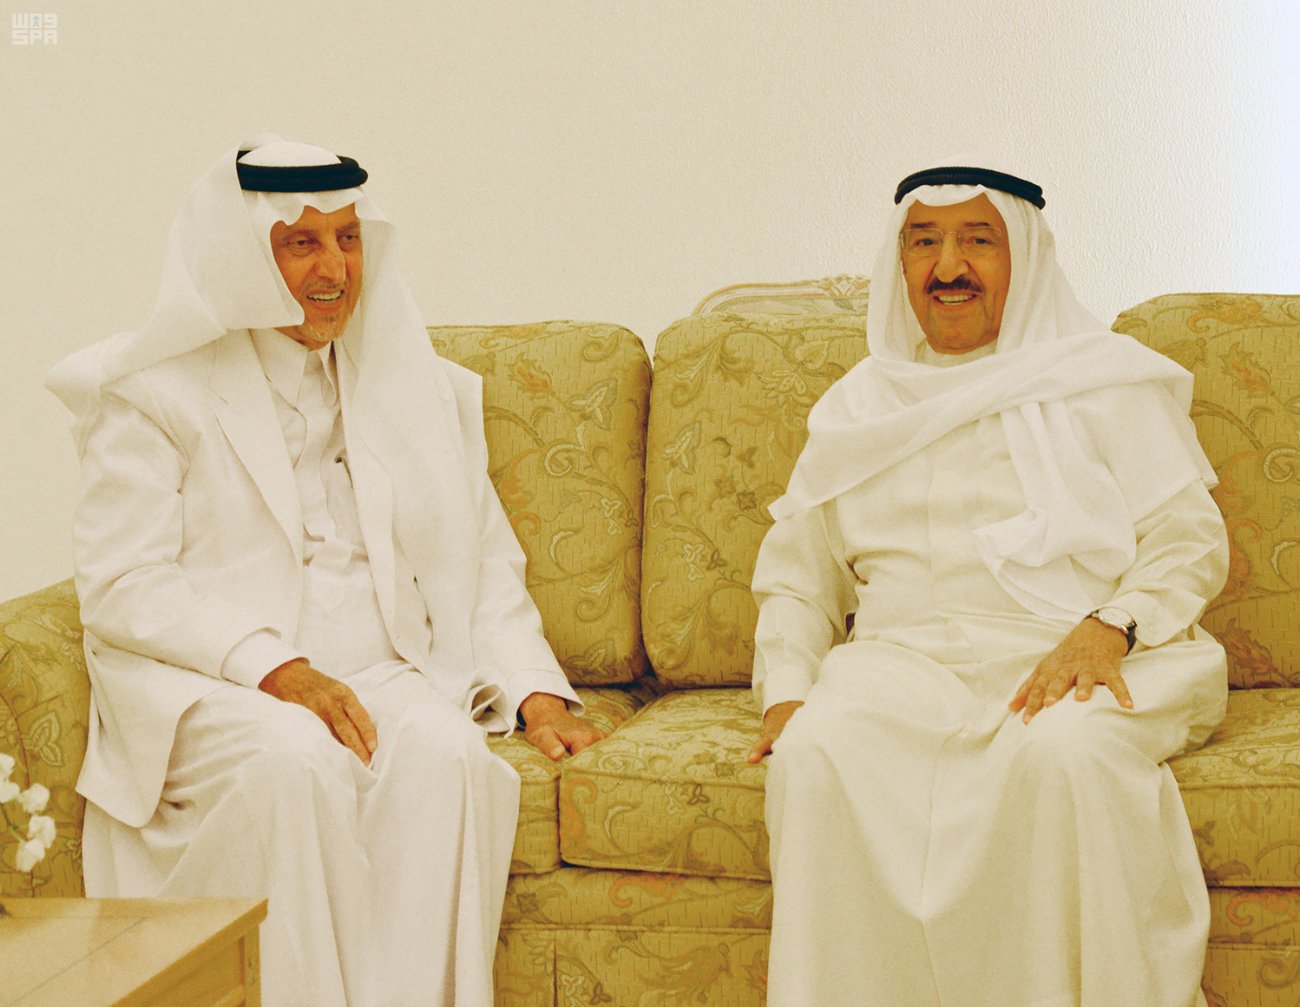 تحرك دبلوماسي#عاجل في الخليج .. رسالة شفهية من الملك و صباح يتصل بتميم قطر